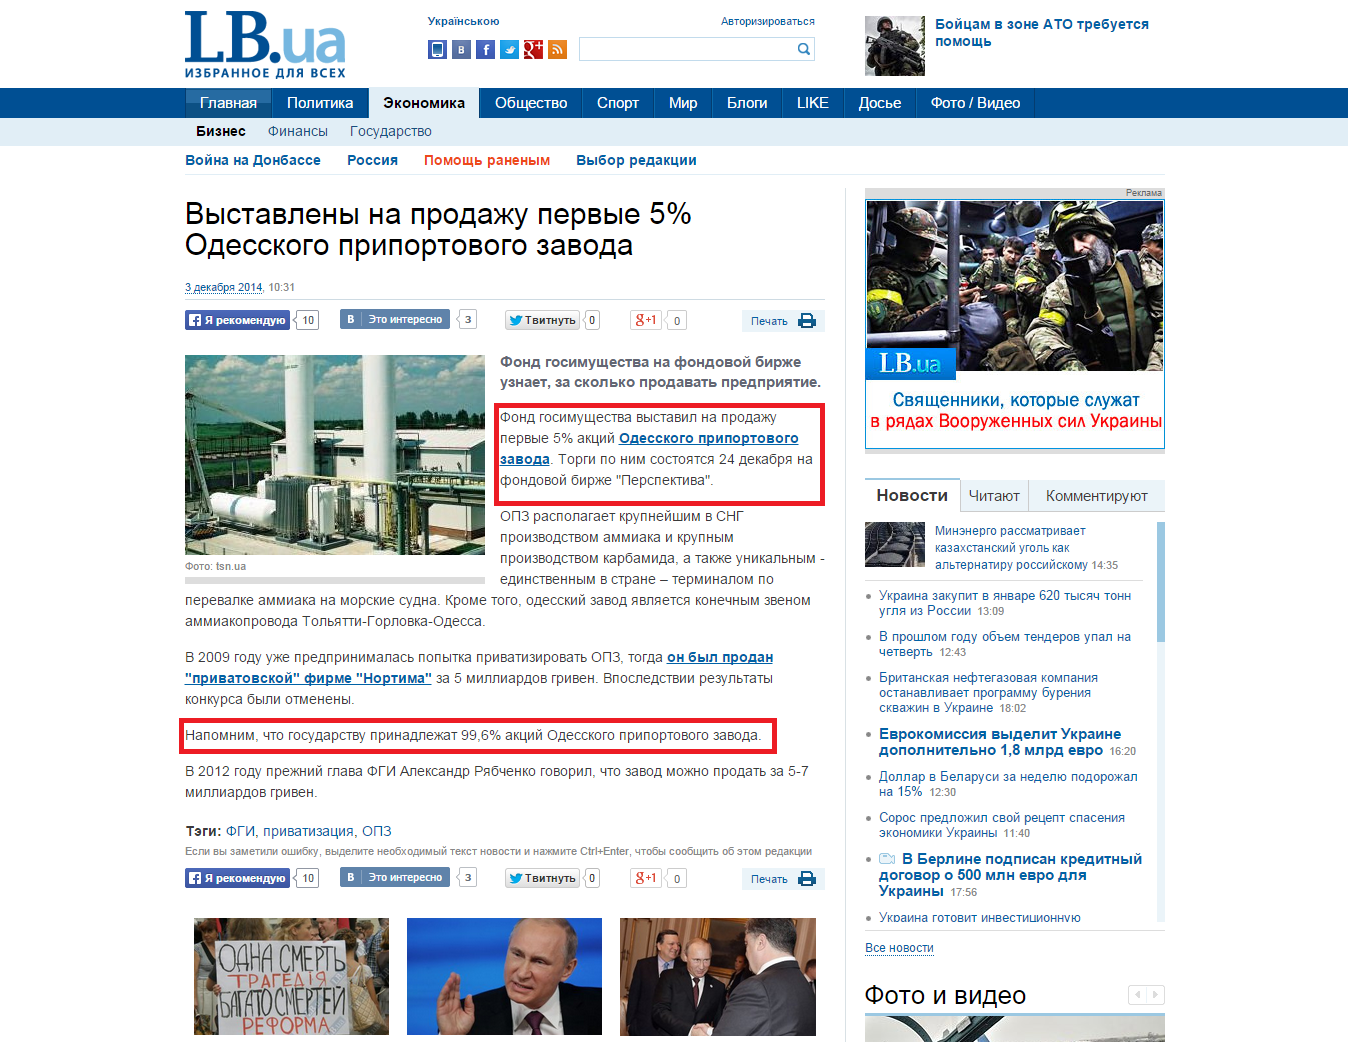 http://economics.lb.ua/business/2014/12/03/288027_vistavleni_prodazhu_pervie_5.html